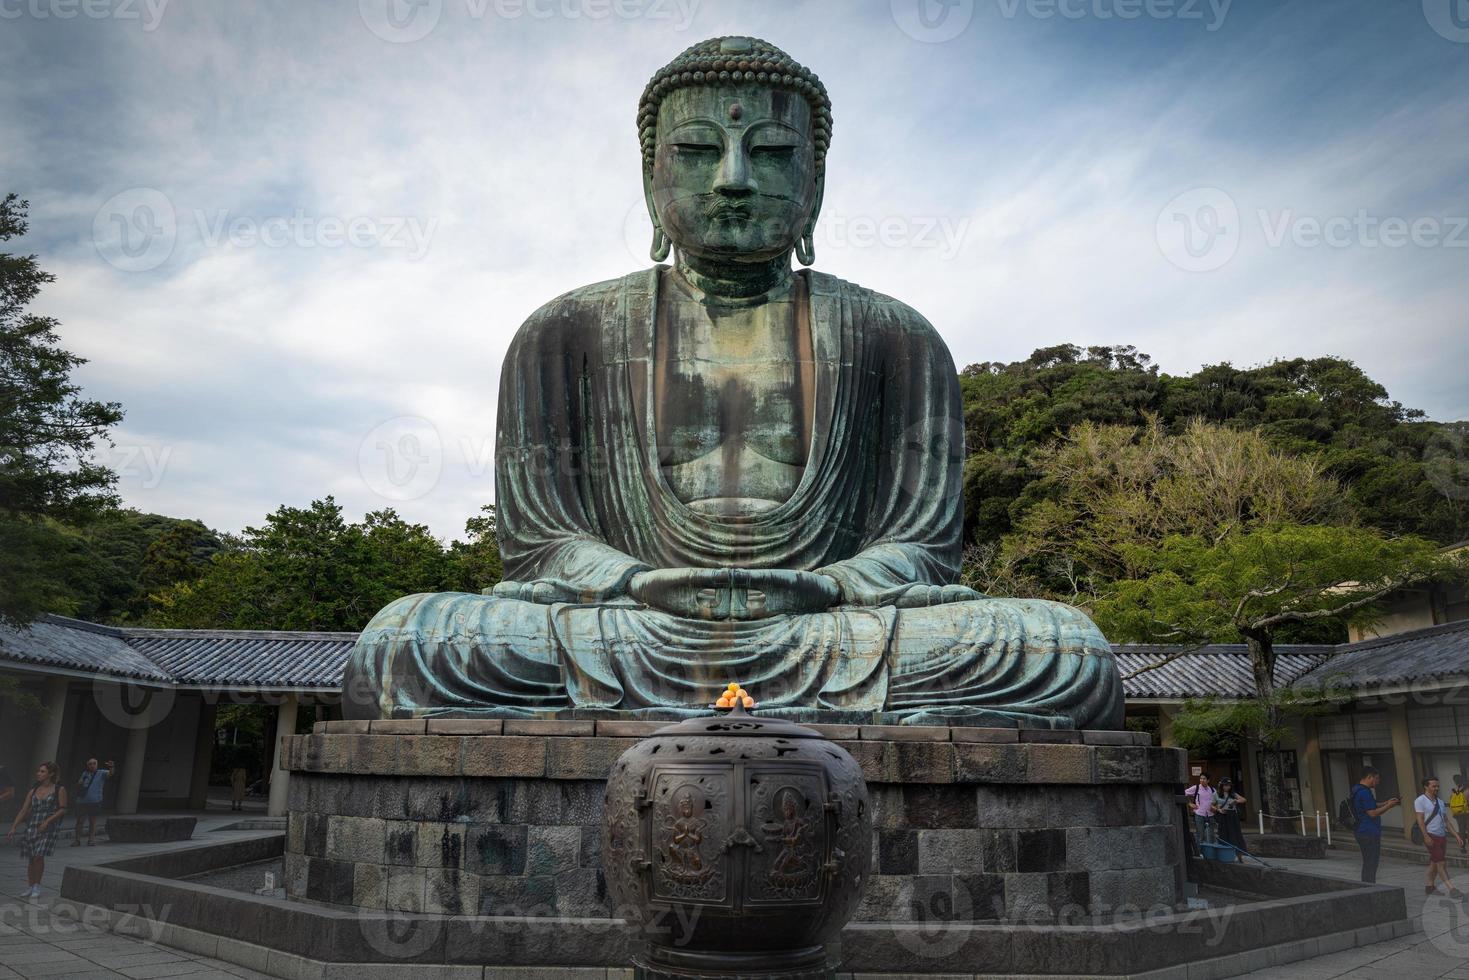 The great Buddha statue in Kamakura photo